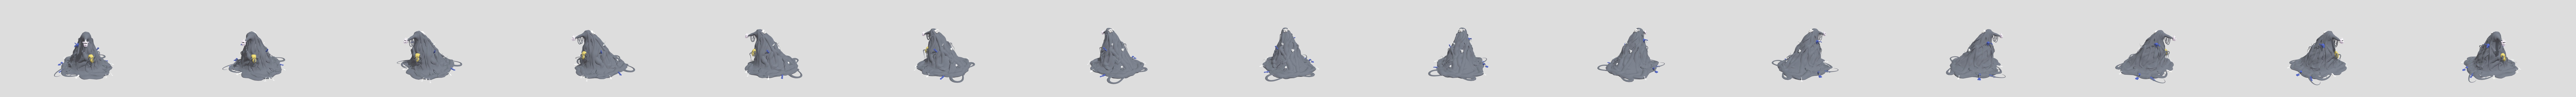 The blob (molten freddy, ennard) - 3D model by lucariomodel999  (@lucariomodel999) [d6398e9]